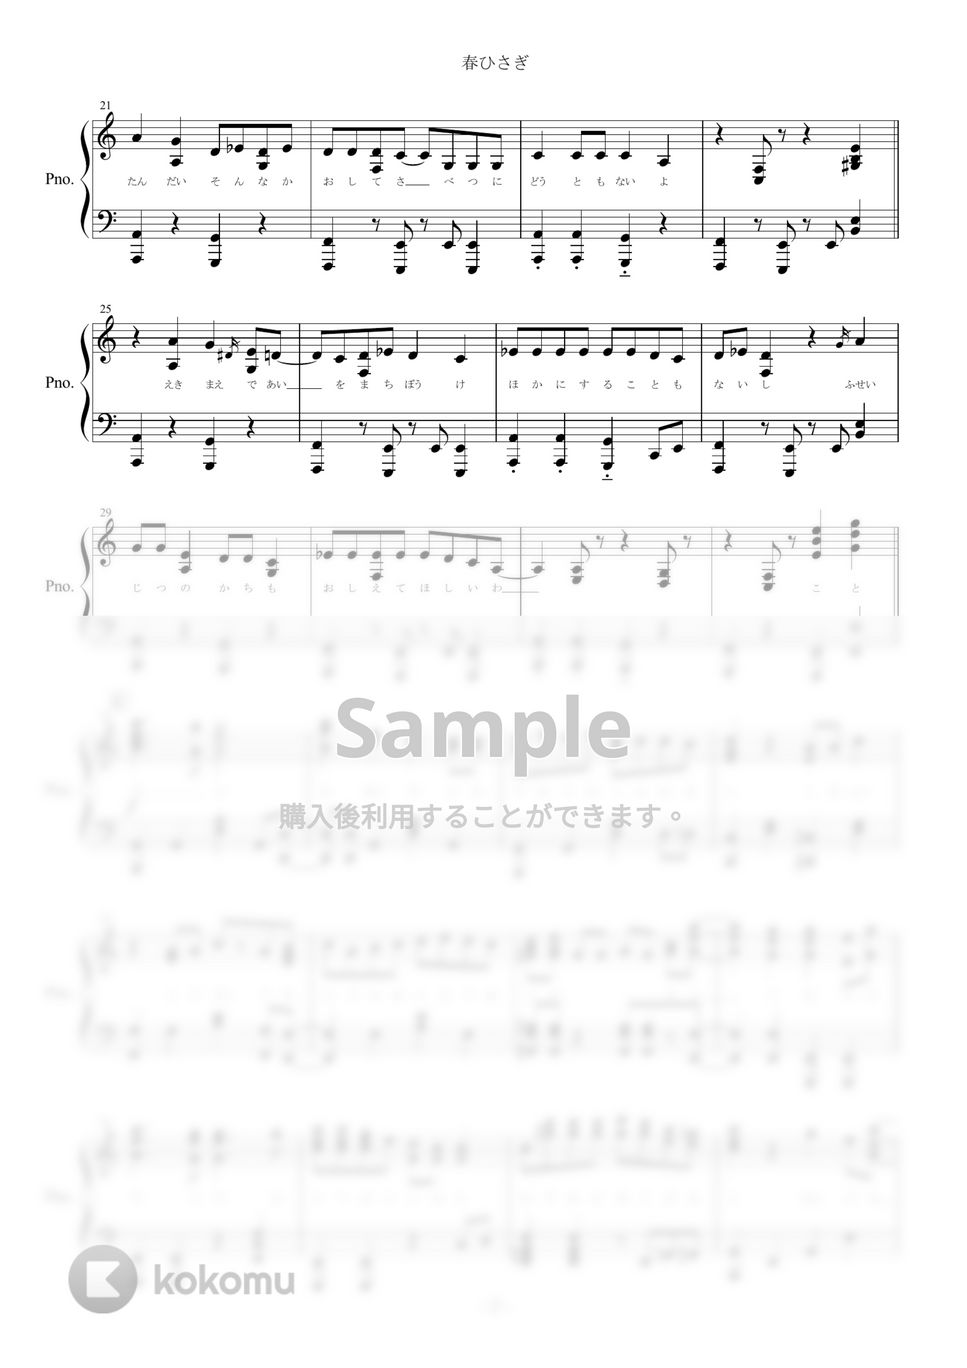 ヨルシカ - 春ひさぎ (ピアノ楽譜/全８ページ) by yoshi